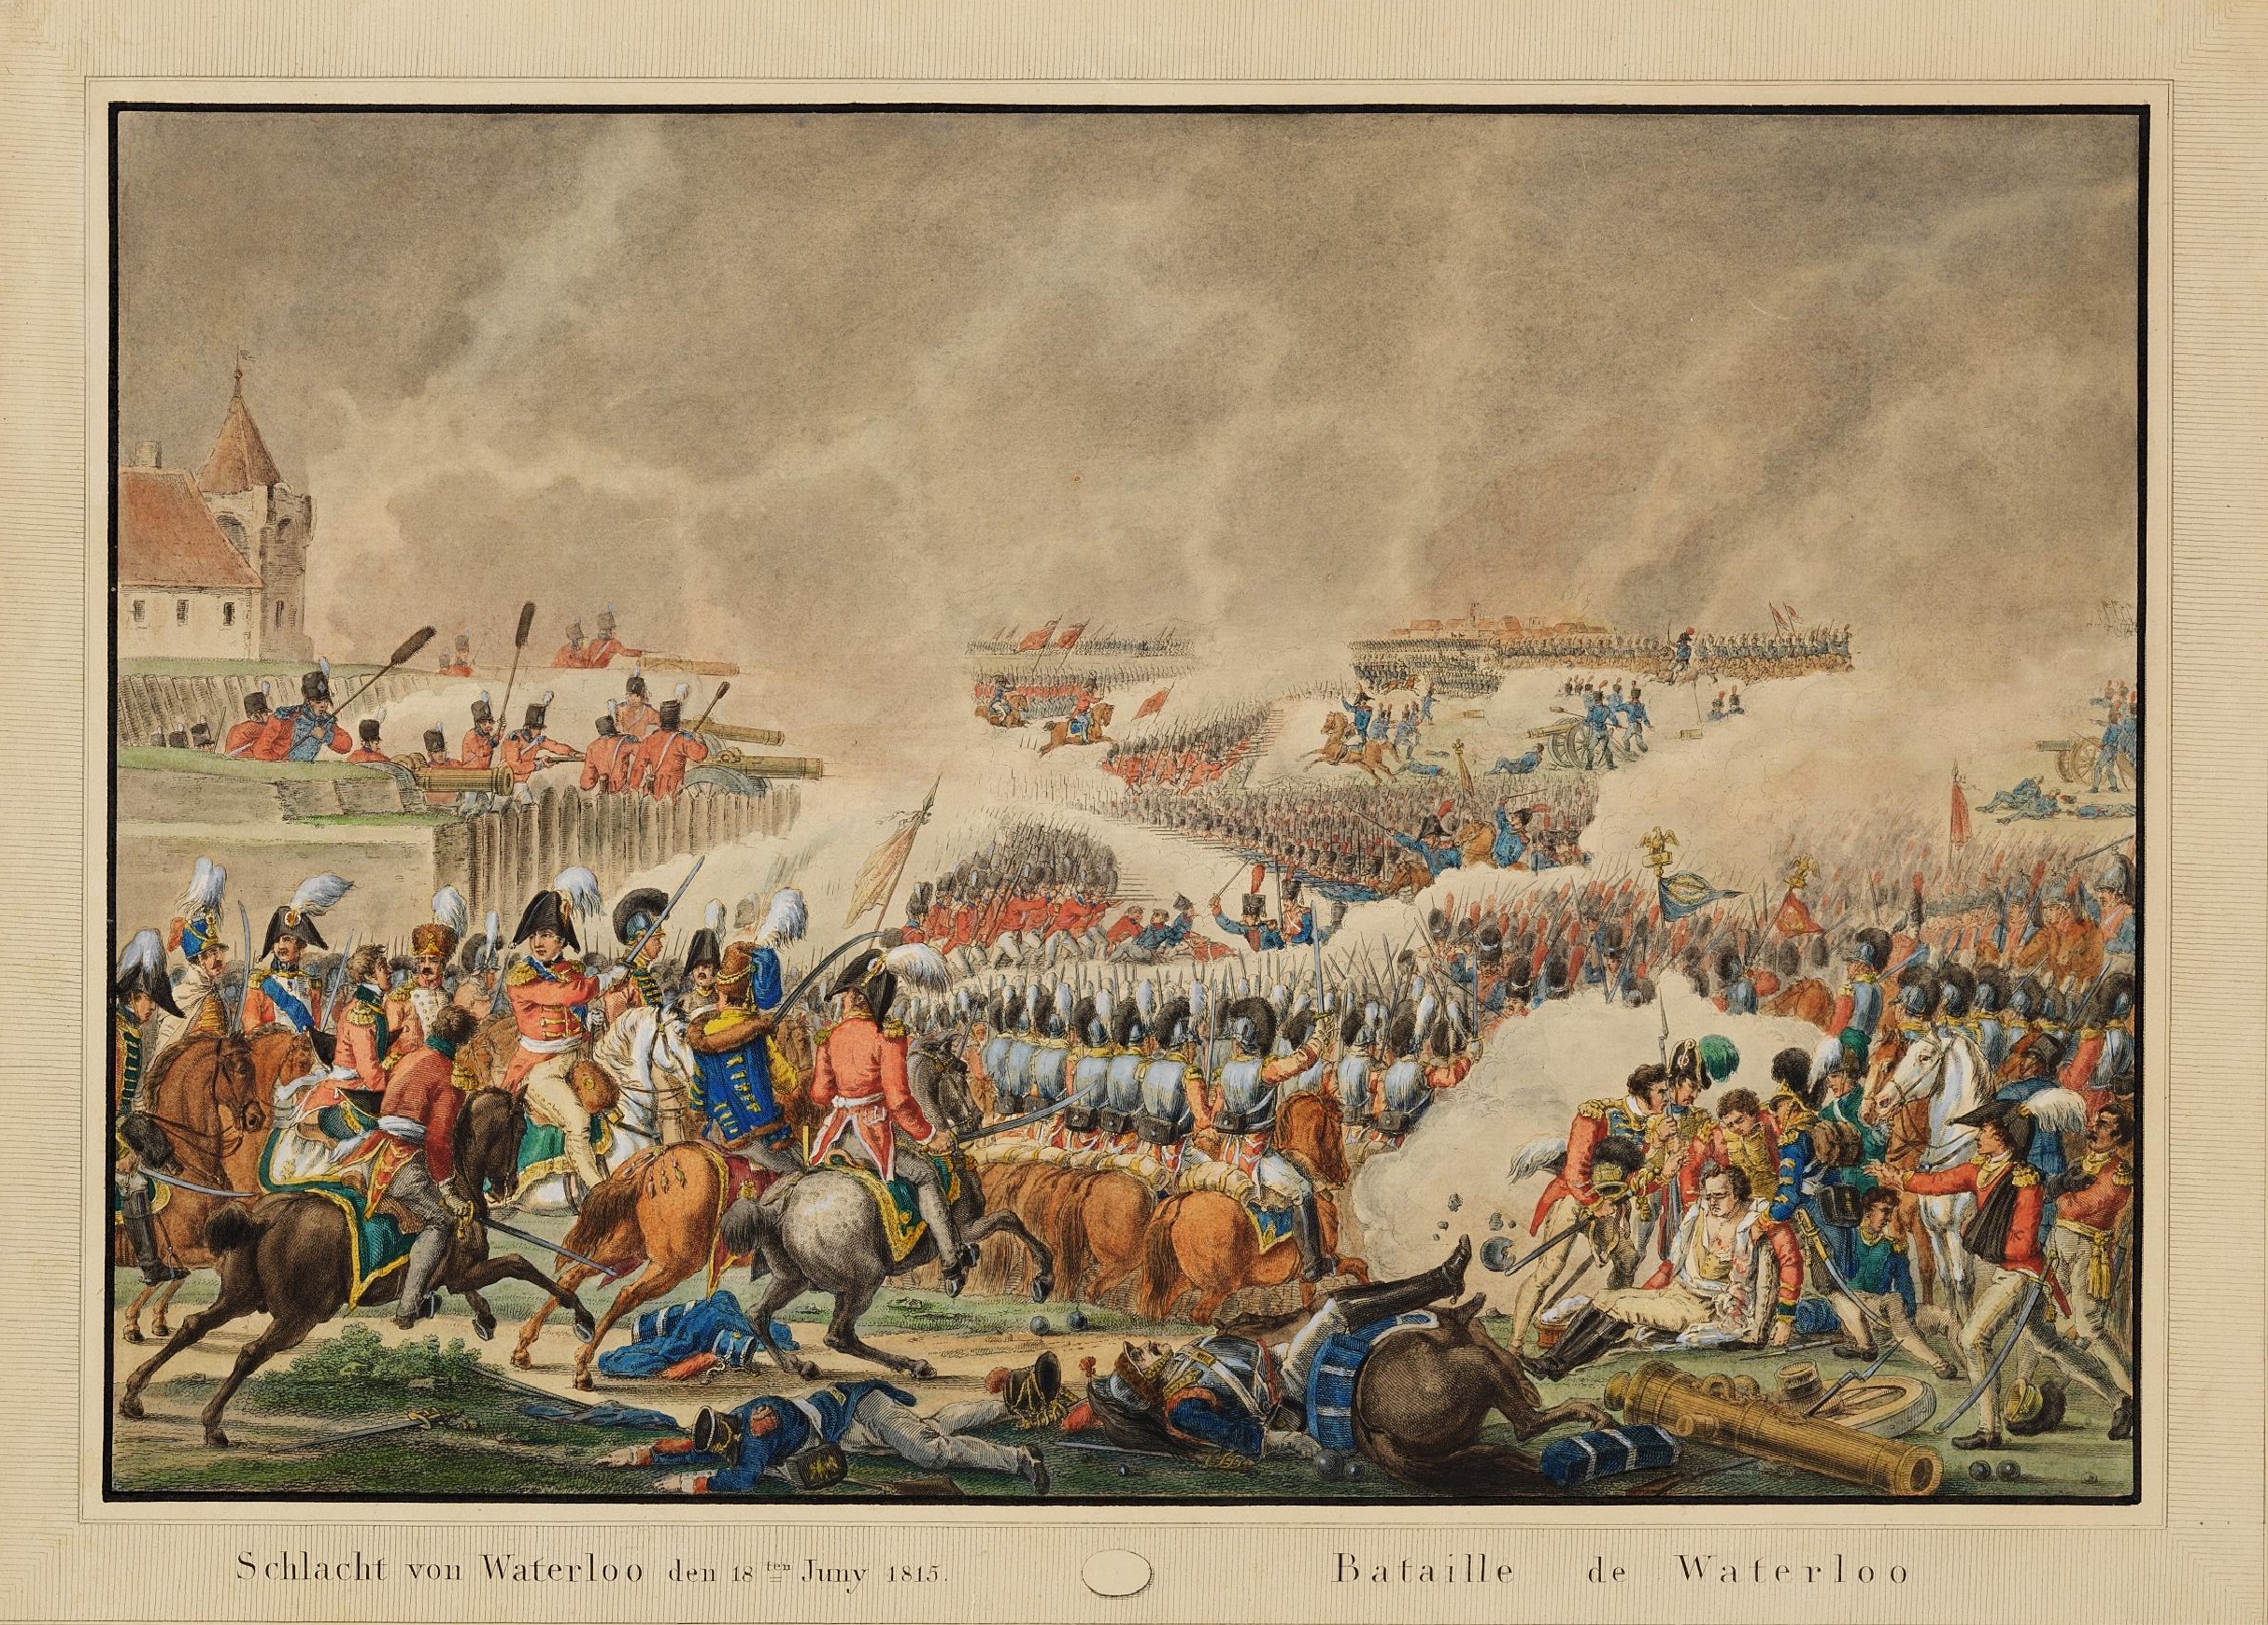 Schlacht von Waterloo den 18ten Juny 1815, nach 1815